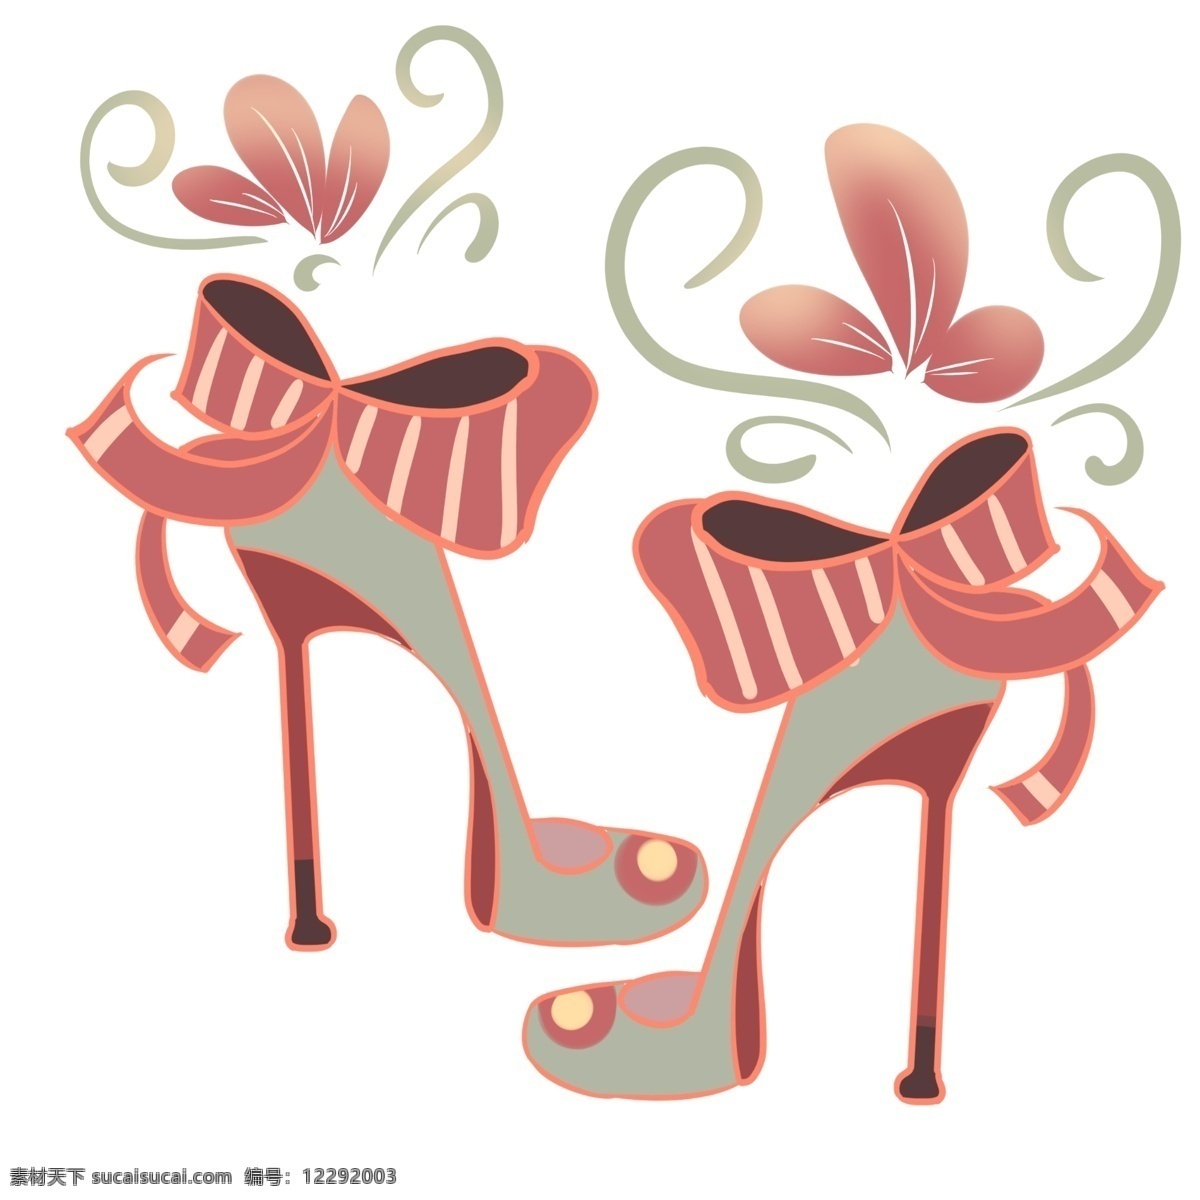 大红色 高跟鞋 白色 条纹 生机勃勃 充满生气 粉色花蕊 萌萌 可爱设计 创意设计 少女装扮 手绘 小清新